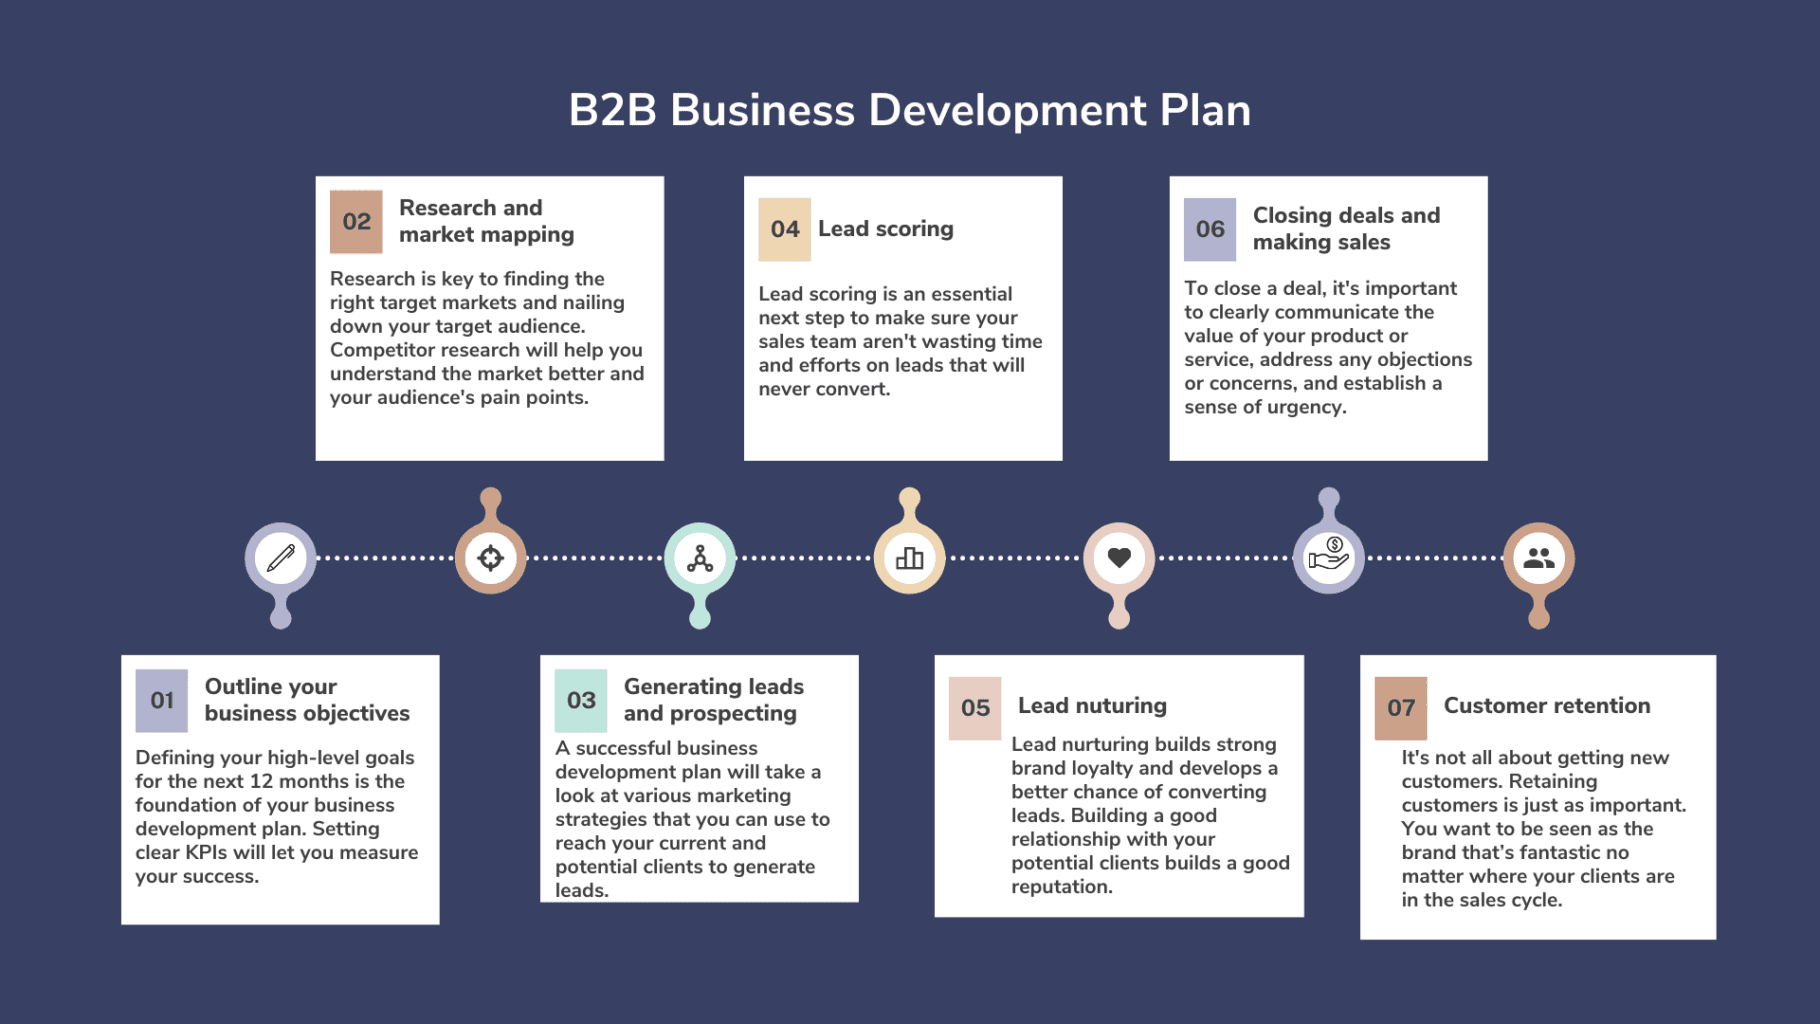 بیزینس پلن برای توسعه کسب و کار های B2B